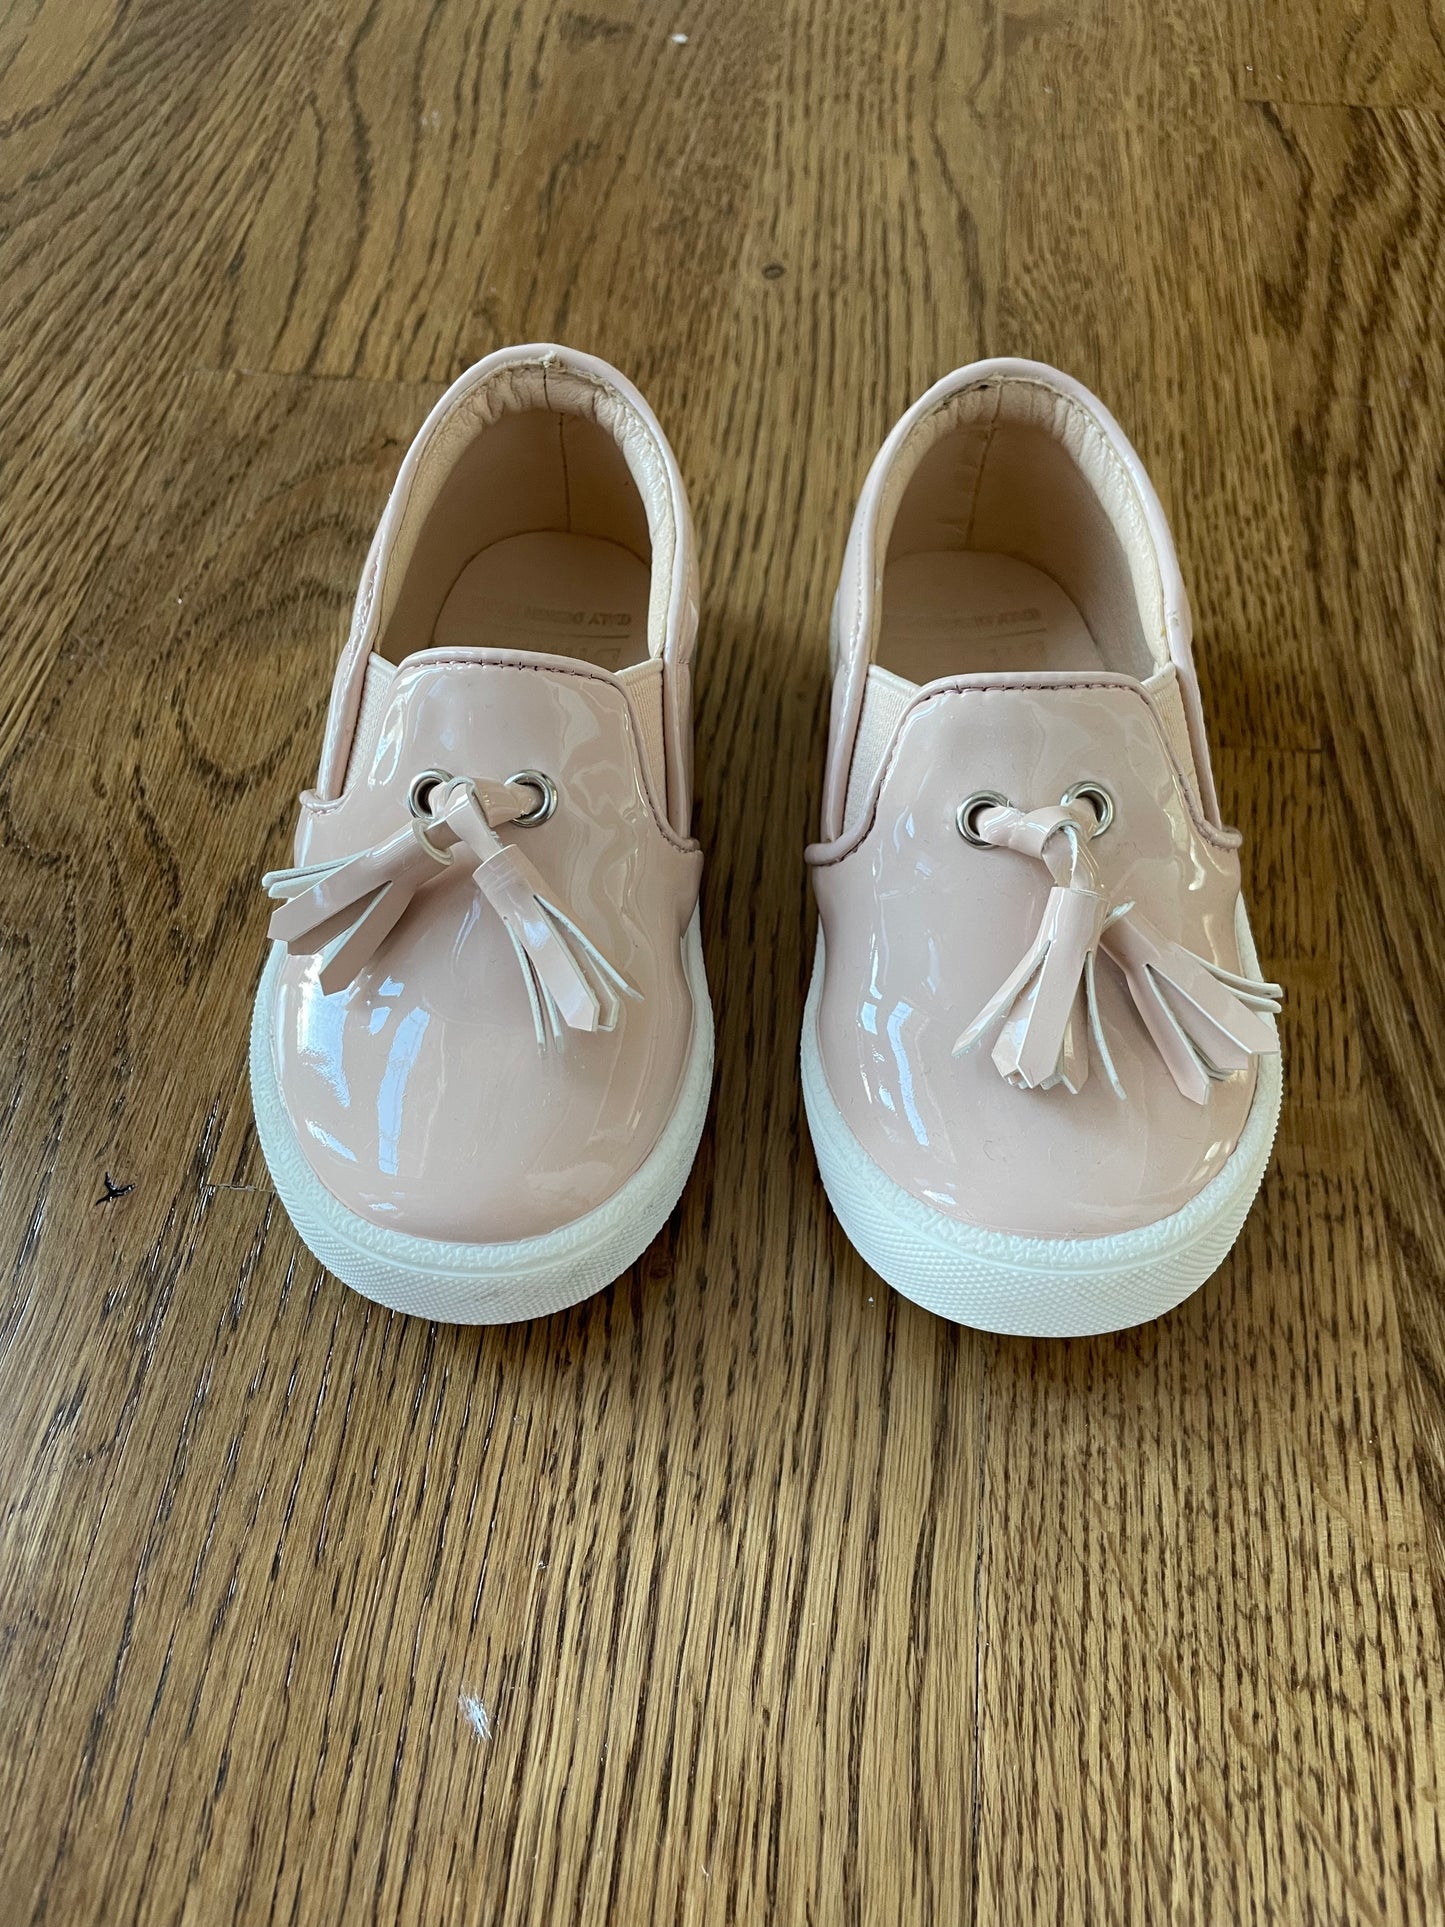 Bimbo Bimba Girls light pink patent leather shoes toddler size 6